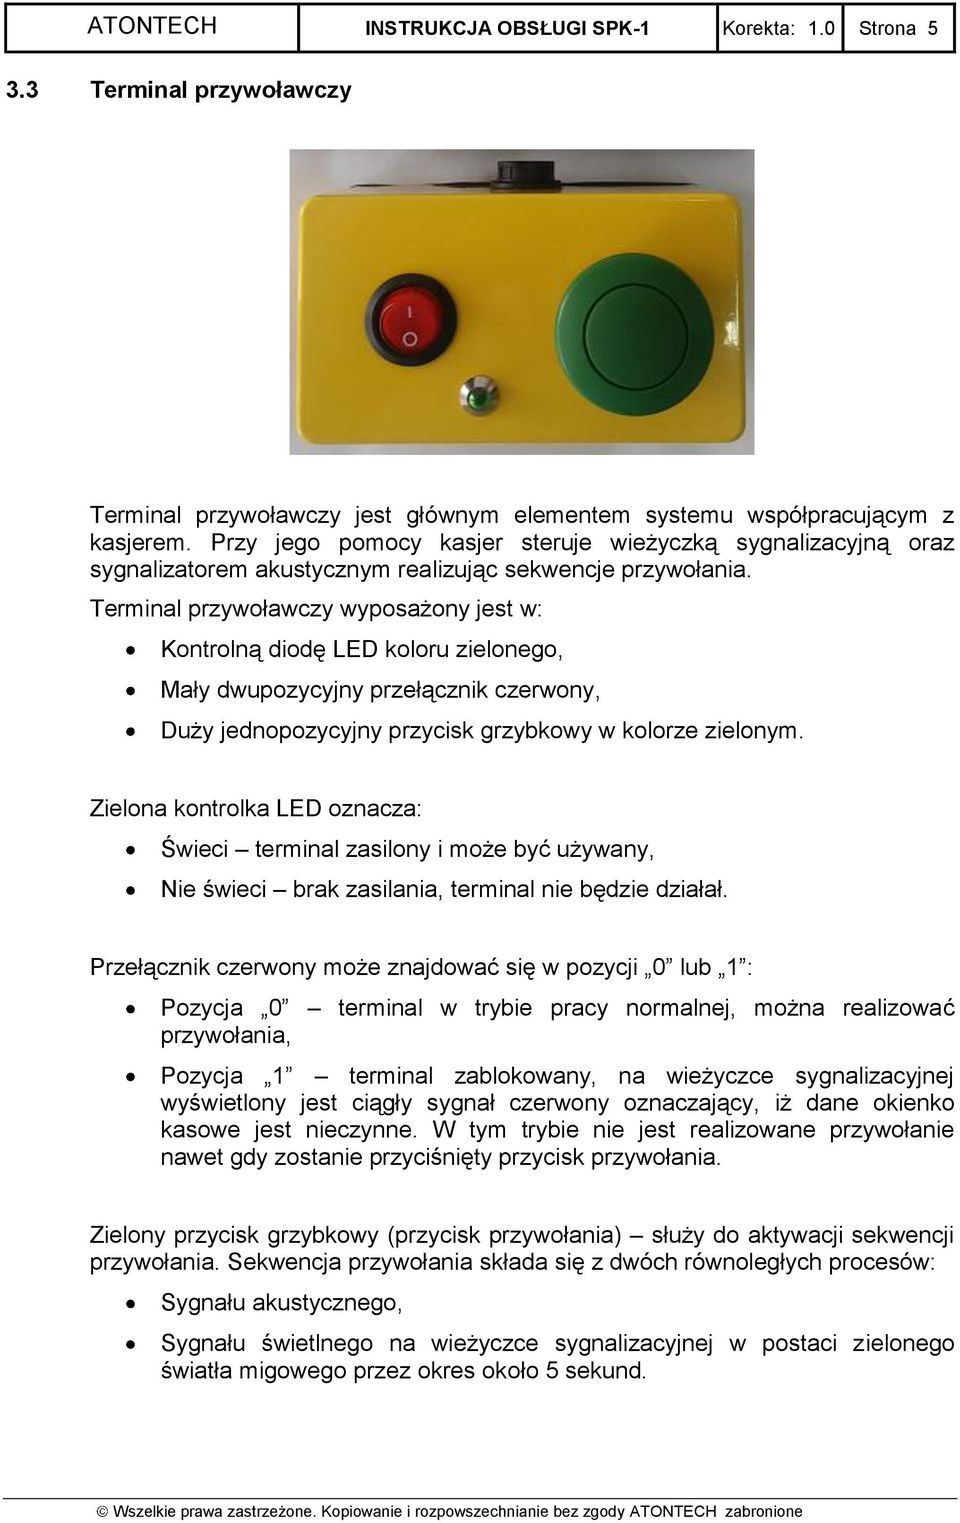 Terminal przywoławczy wyposażony jest w: Kontrolną diodę LED koloru zielonego, Mały dwupozycyjny przełącznik czerwony, Duży jednopozycyjny przycisk grzybkowy w kolorze zielonym.